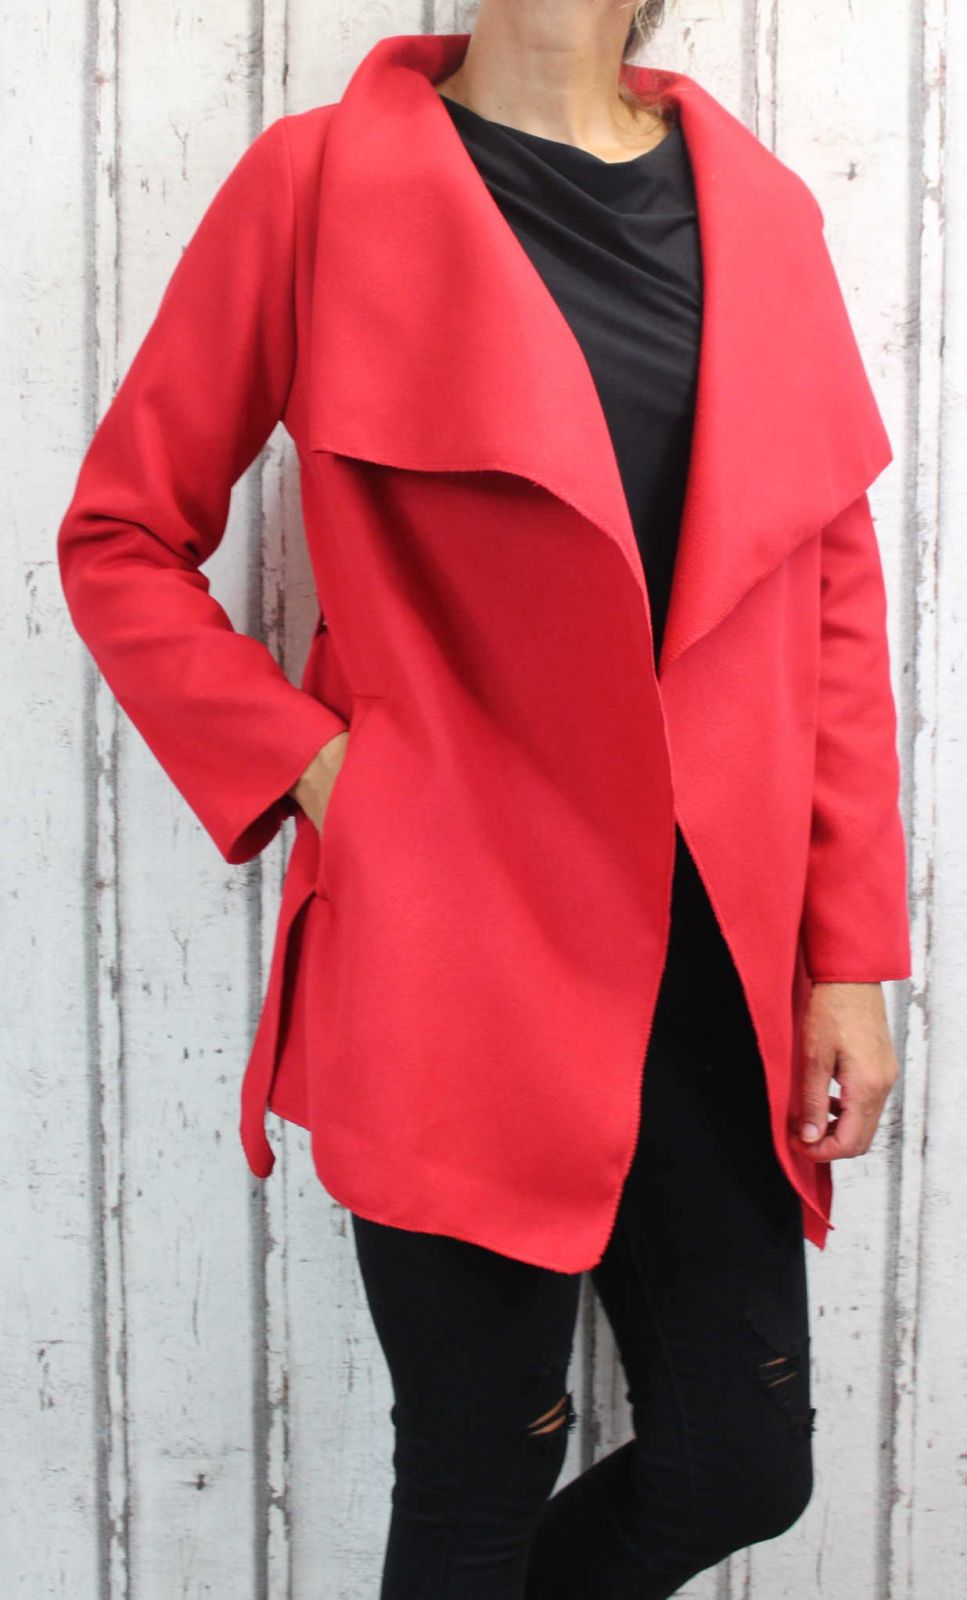 Dámský fleesový kabát, dámský kabátek, jarní kabát, podzimní kabát, dámský červený fleesový kabát